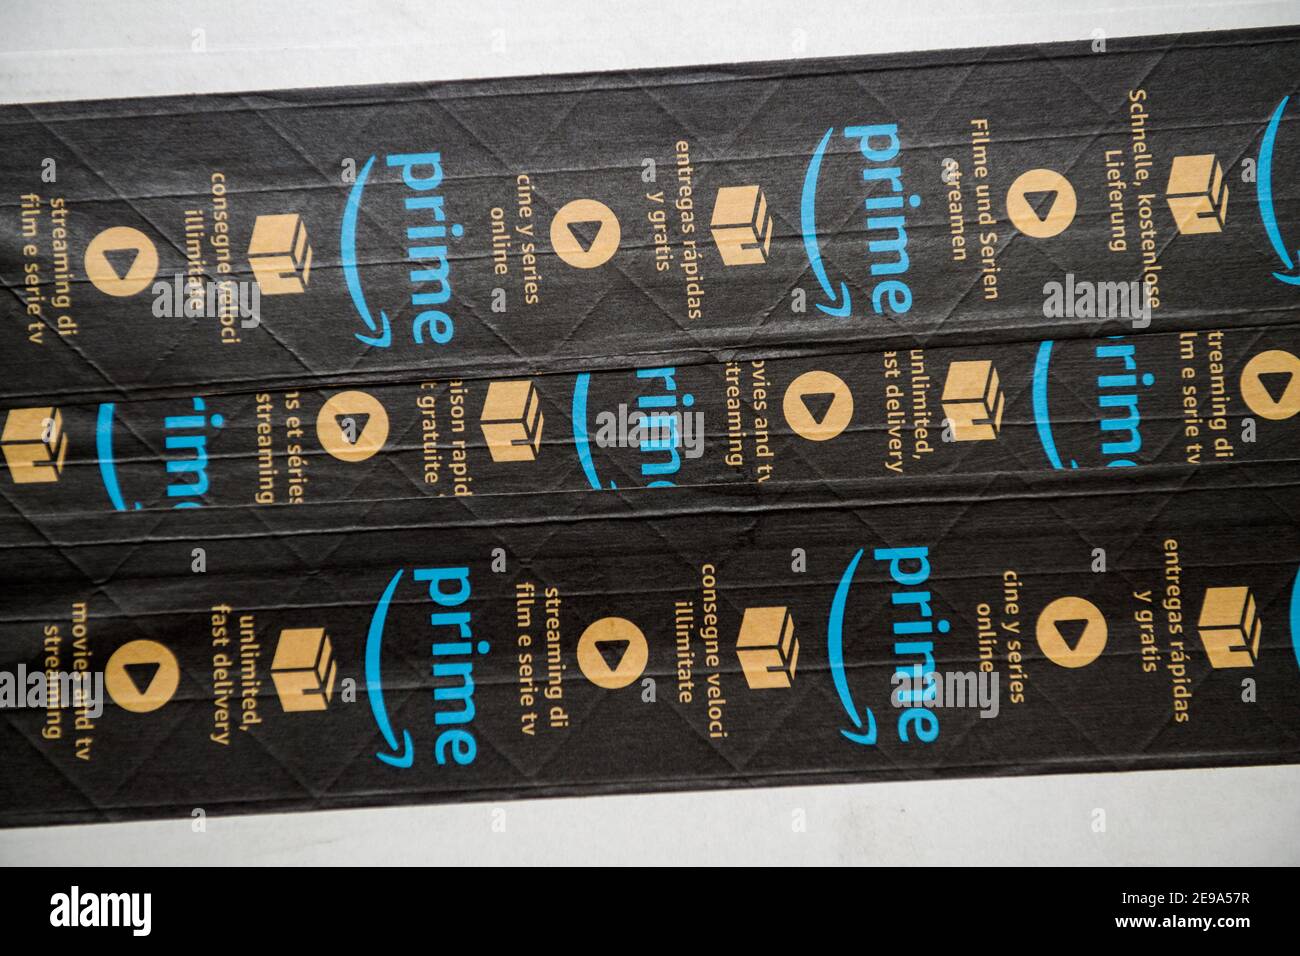 Paris, Frankreich - 23. Jan 2021: Nahaufnahme von mehreren Zeilen Amazon  Prime-Scotch-Band auf dem Karton eines Paketes mit Prime-Werbung für  schnelle Lieferung und TV-Streaming Stockfotografie - Alamy